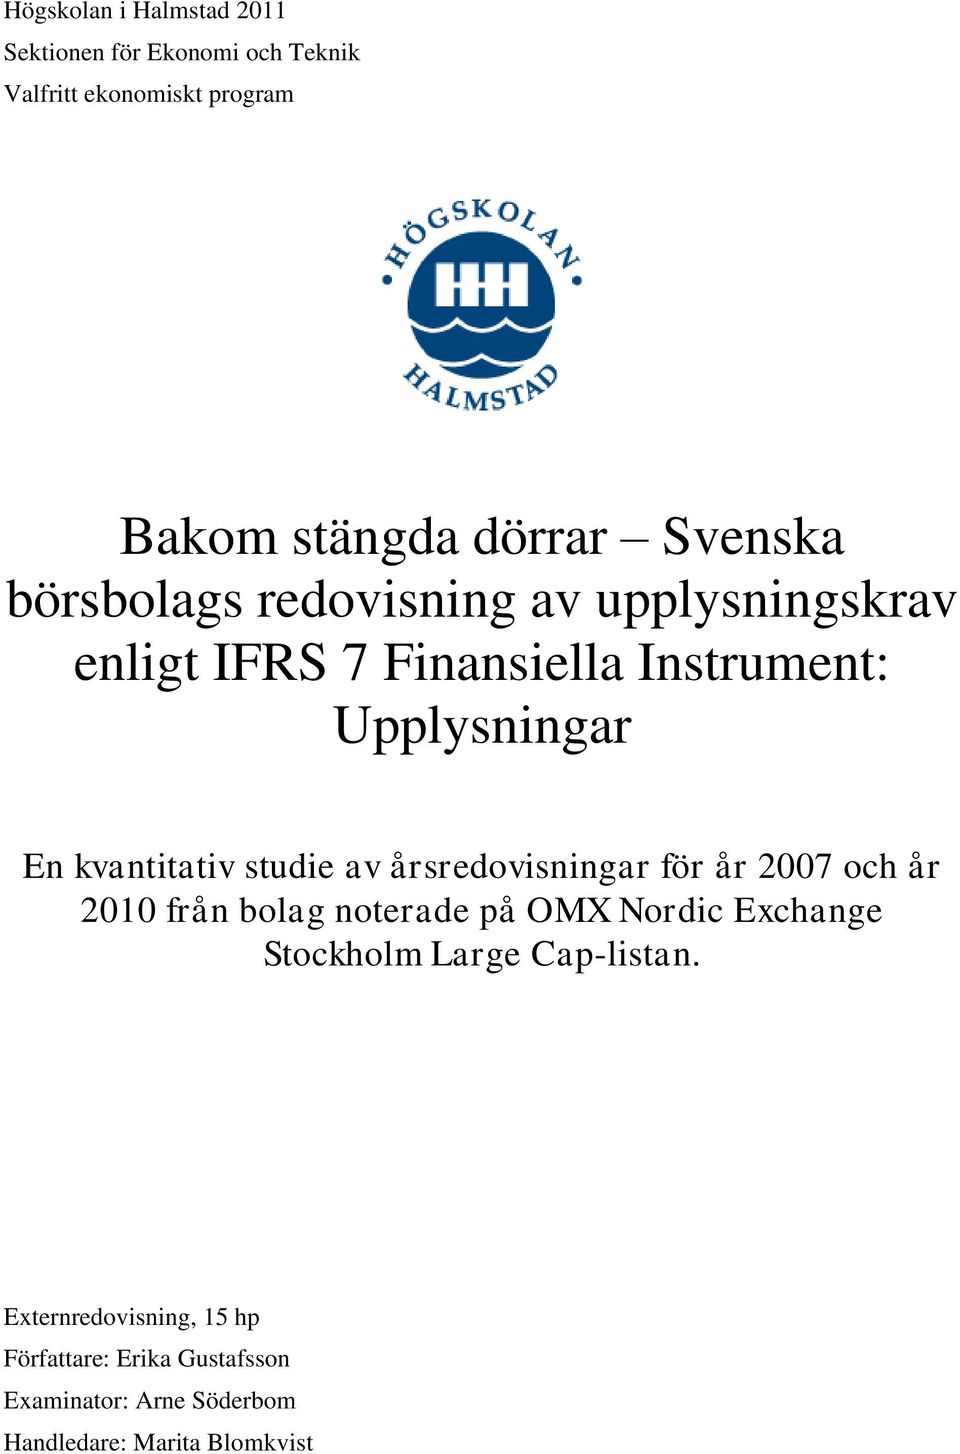 kvantitativ studie av årsredovisningar för år 2007 och år 2010 från bolag noterade på OMX Nordic Exchange